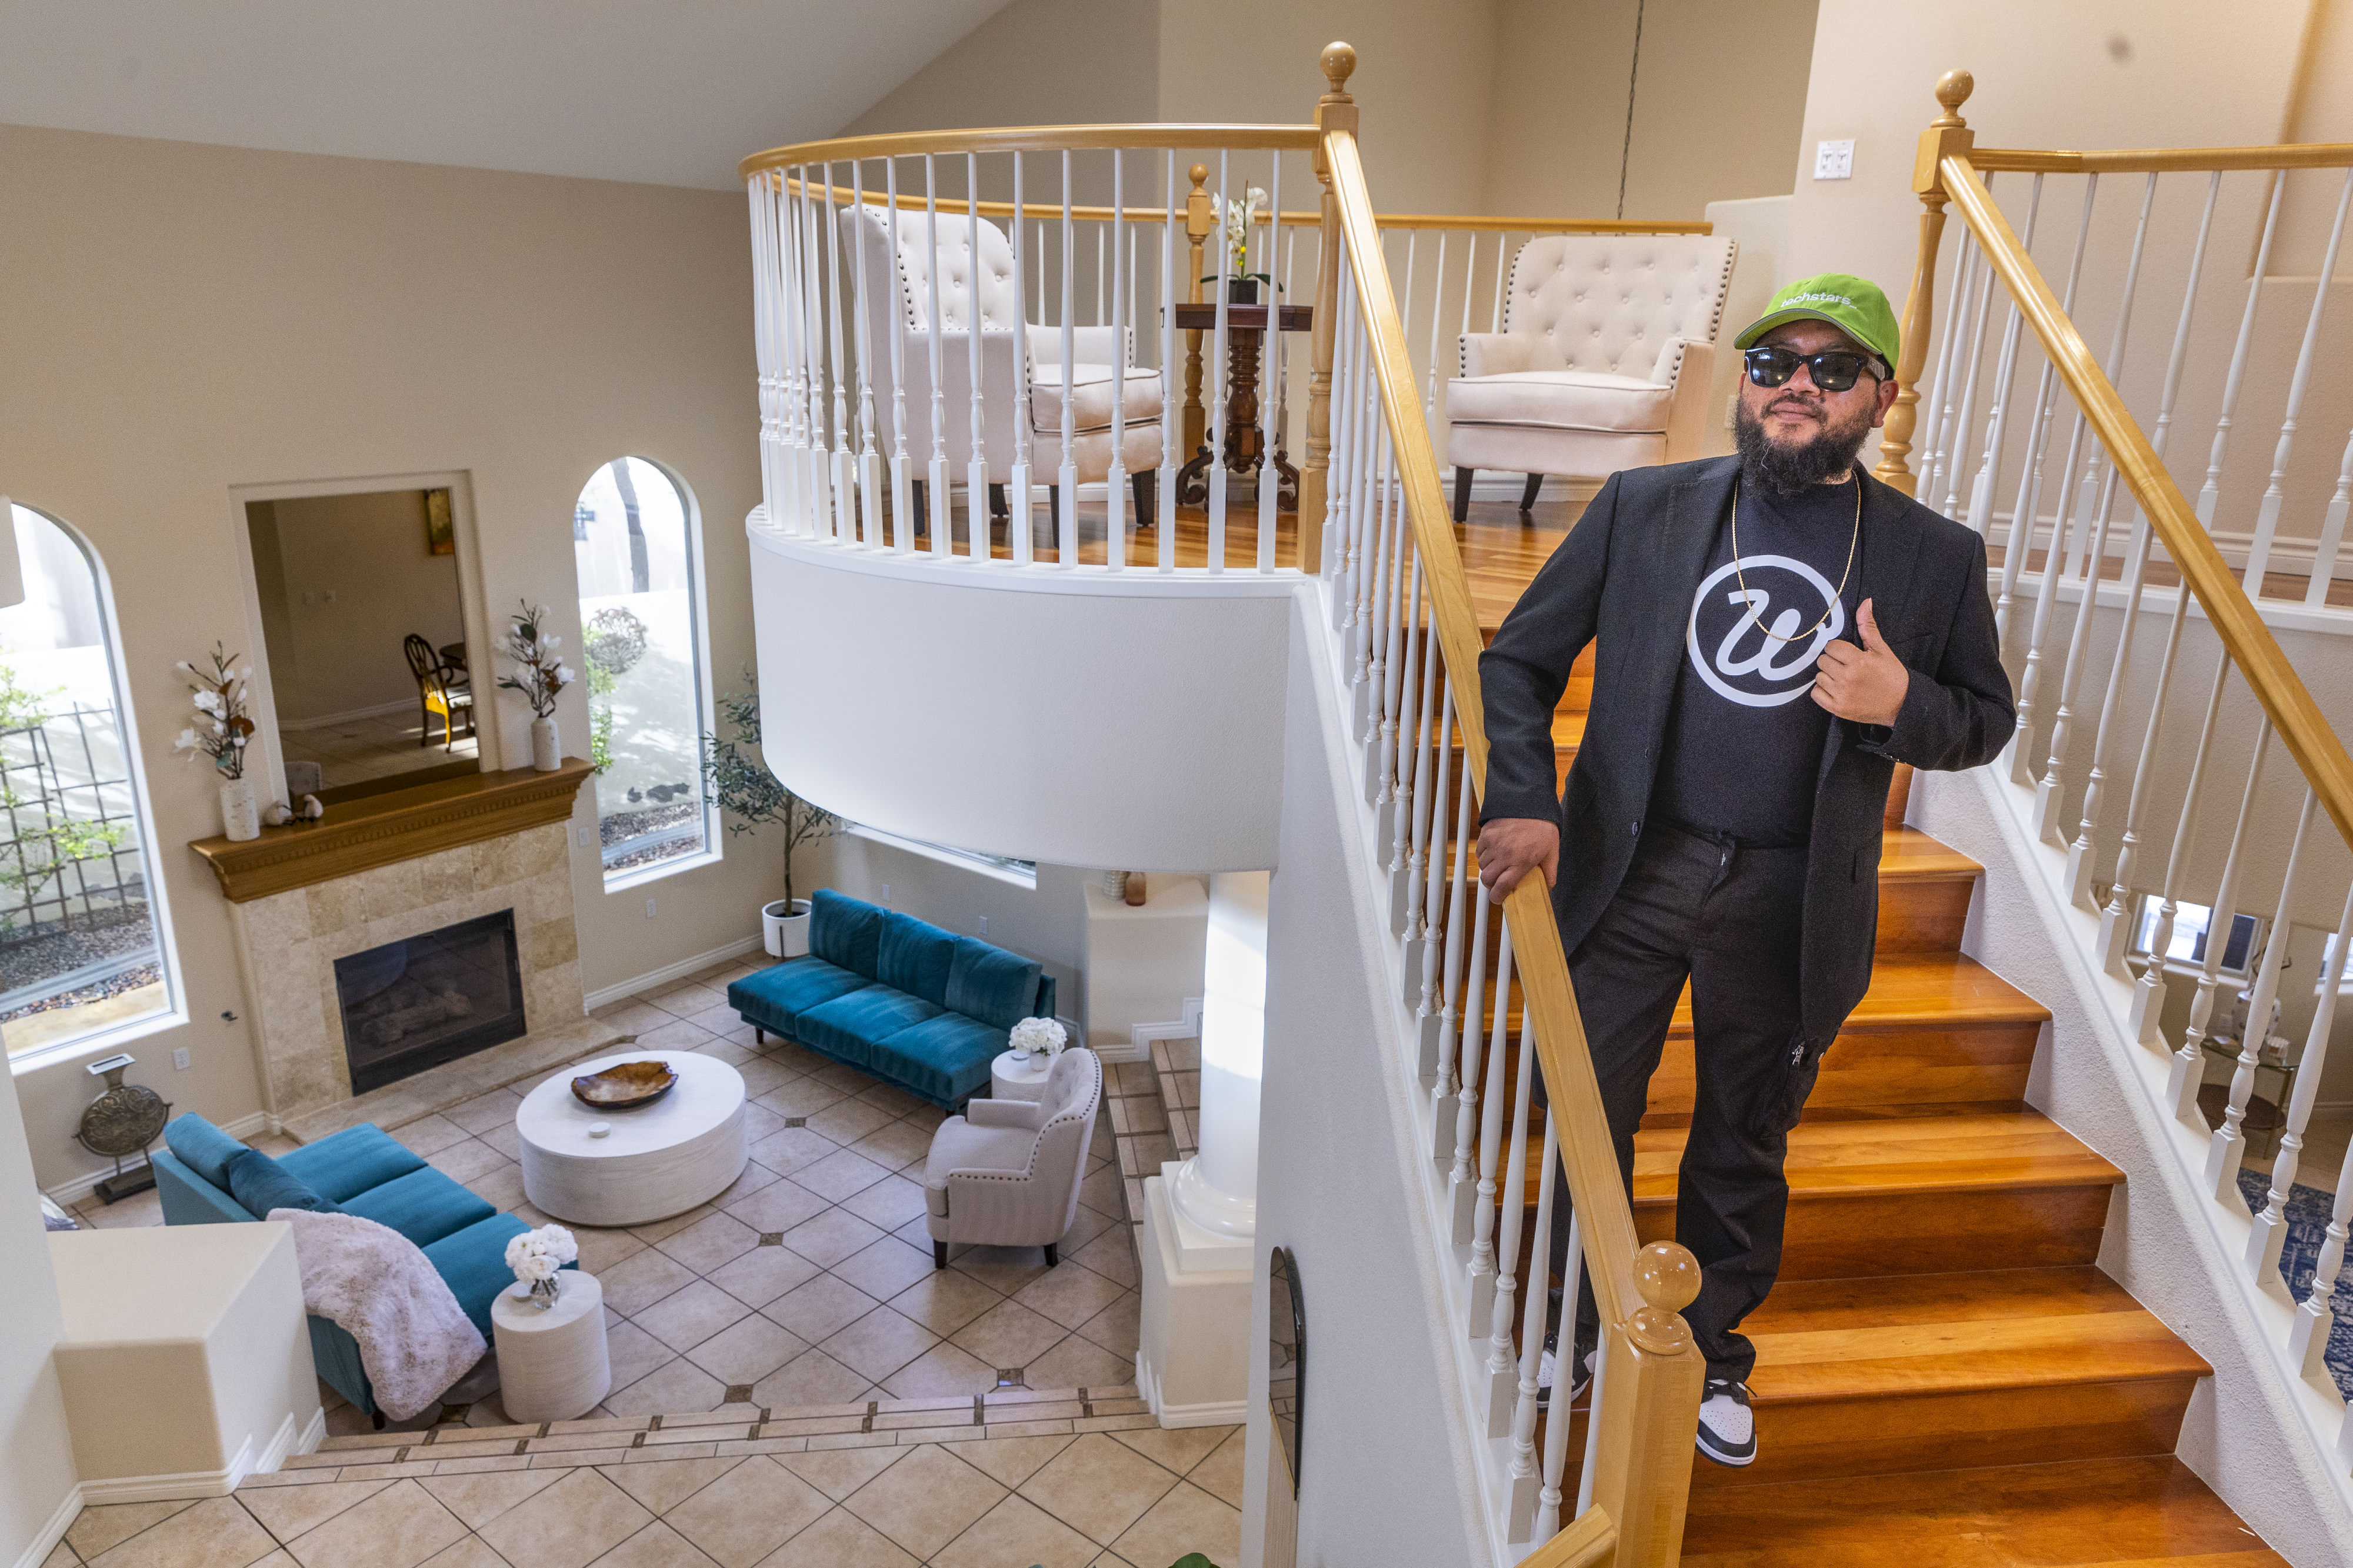 Workbnb, startup Las Vegas, menawarkan perumahan sewa untuk pekerja yang bepergian